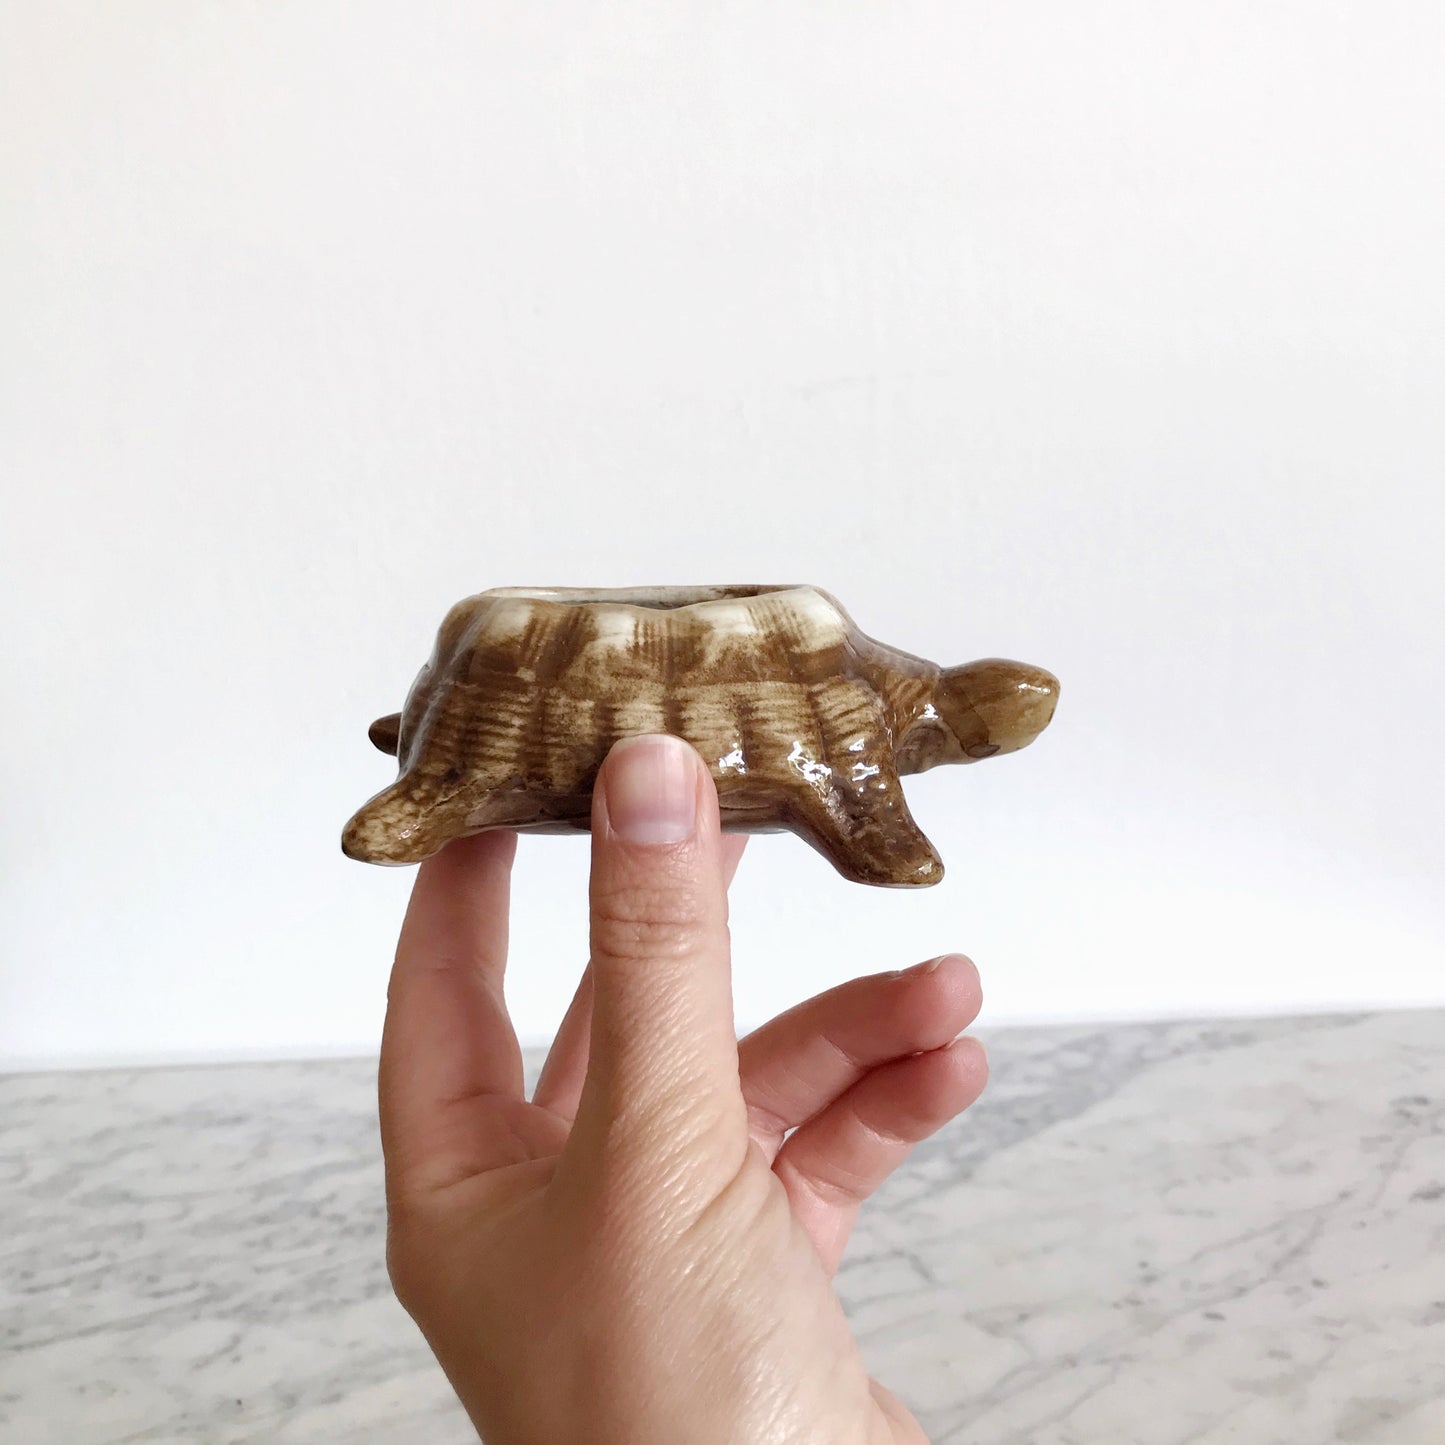 Small Vintage Ceramic Turtle